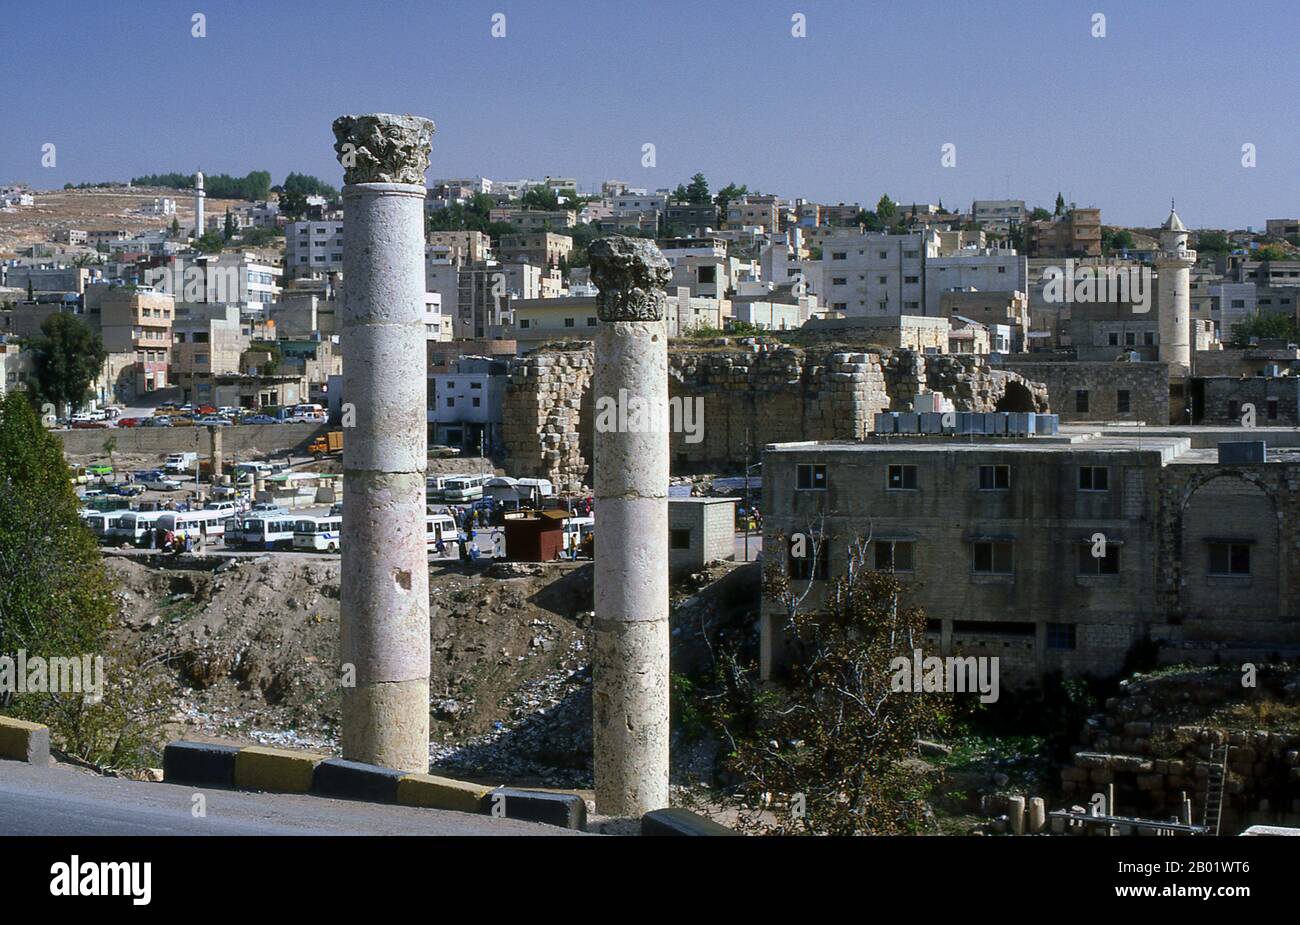 Jordanie : colonnes romaines devant la ville moderne de Jerash. Jerash est le site des ruines de la ville gréco-romaine de Gerasa, également appelée Antioche sur le fleuve d'Or. Jerash est considérée comme l'une des villes romaines les plus importantes et les mieux préservées du proche-Orient. C'était une ville de la Décapole. Des fouilles récentes montrent que Jerash était déjà habité pendant l'âge du bronze (3200-1200 av. J.-C.). Après la conquête romaine en 63 av. J.-C., Jerash et les terres qui l'entourent ont été annexées par la province romaine de Syrie, et ont rejoint plus tard les villes de la Décapole. Banque D'Images